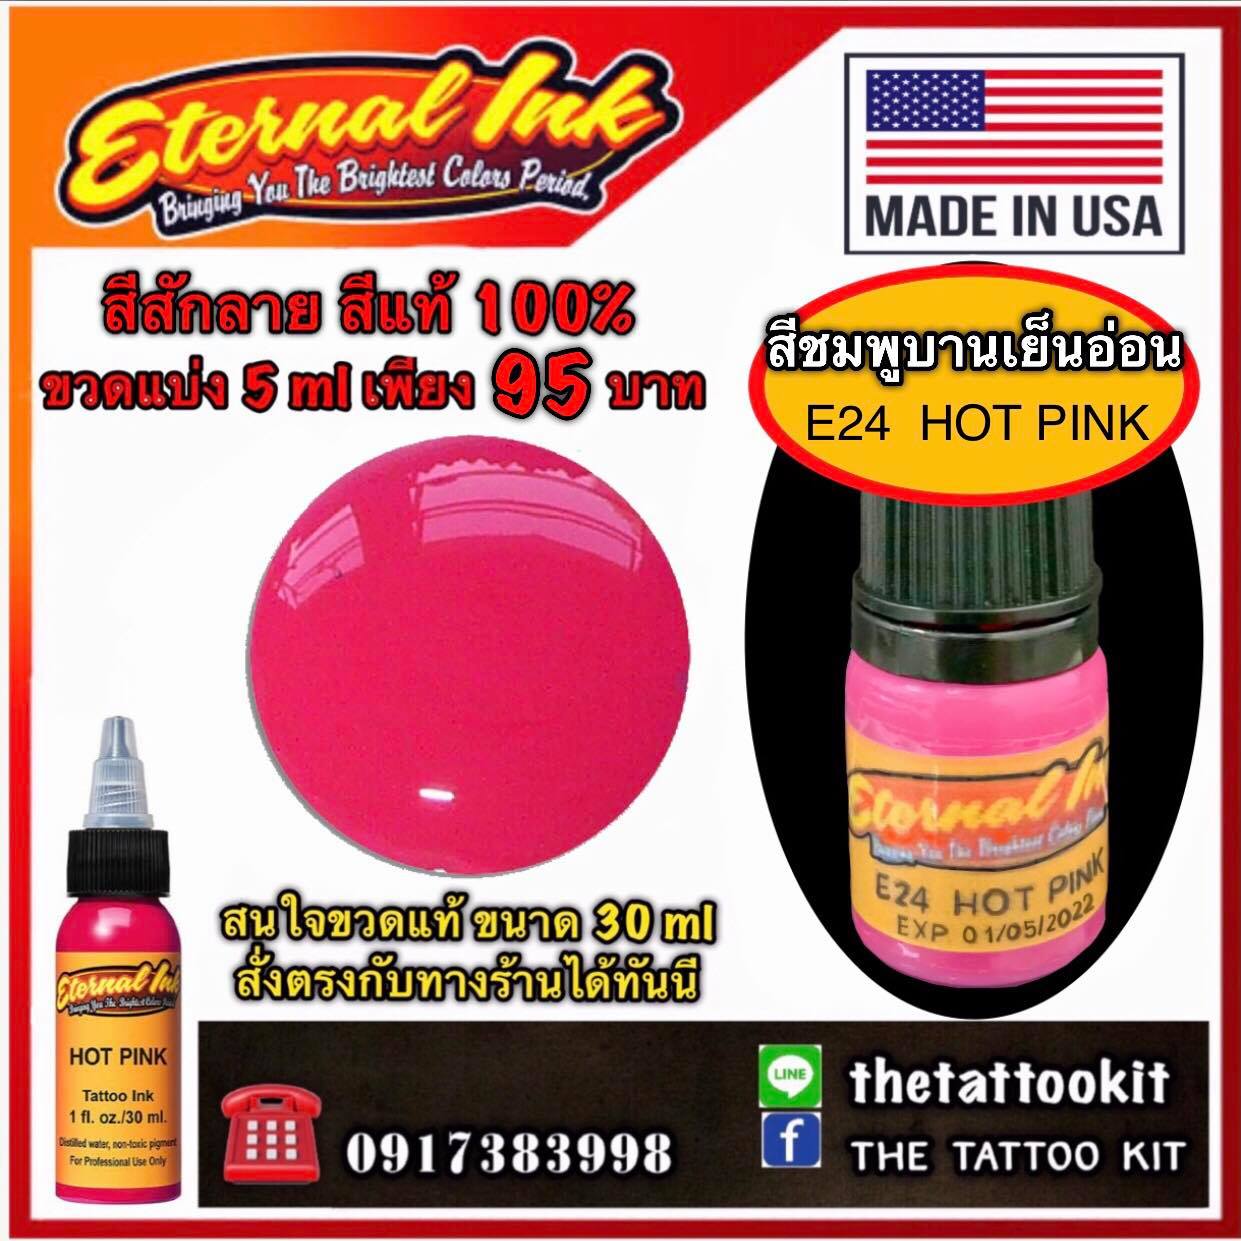 สีสักลาย สีชมพูเข้ม ( E24 Hot Pink ) ใช้ได้ทั้งสักตัว และ สักปาก สีแท้แบรนด์ เอเทอร์นอล ขวดแบ่ง 5 ml ขวดใหม่